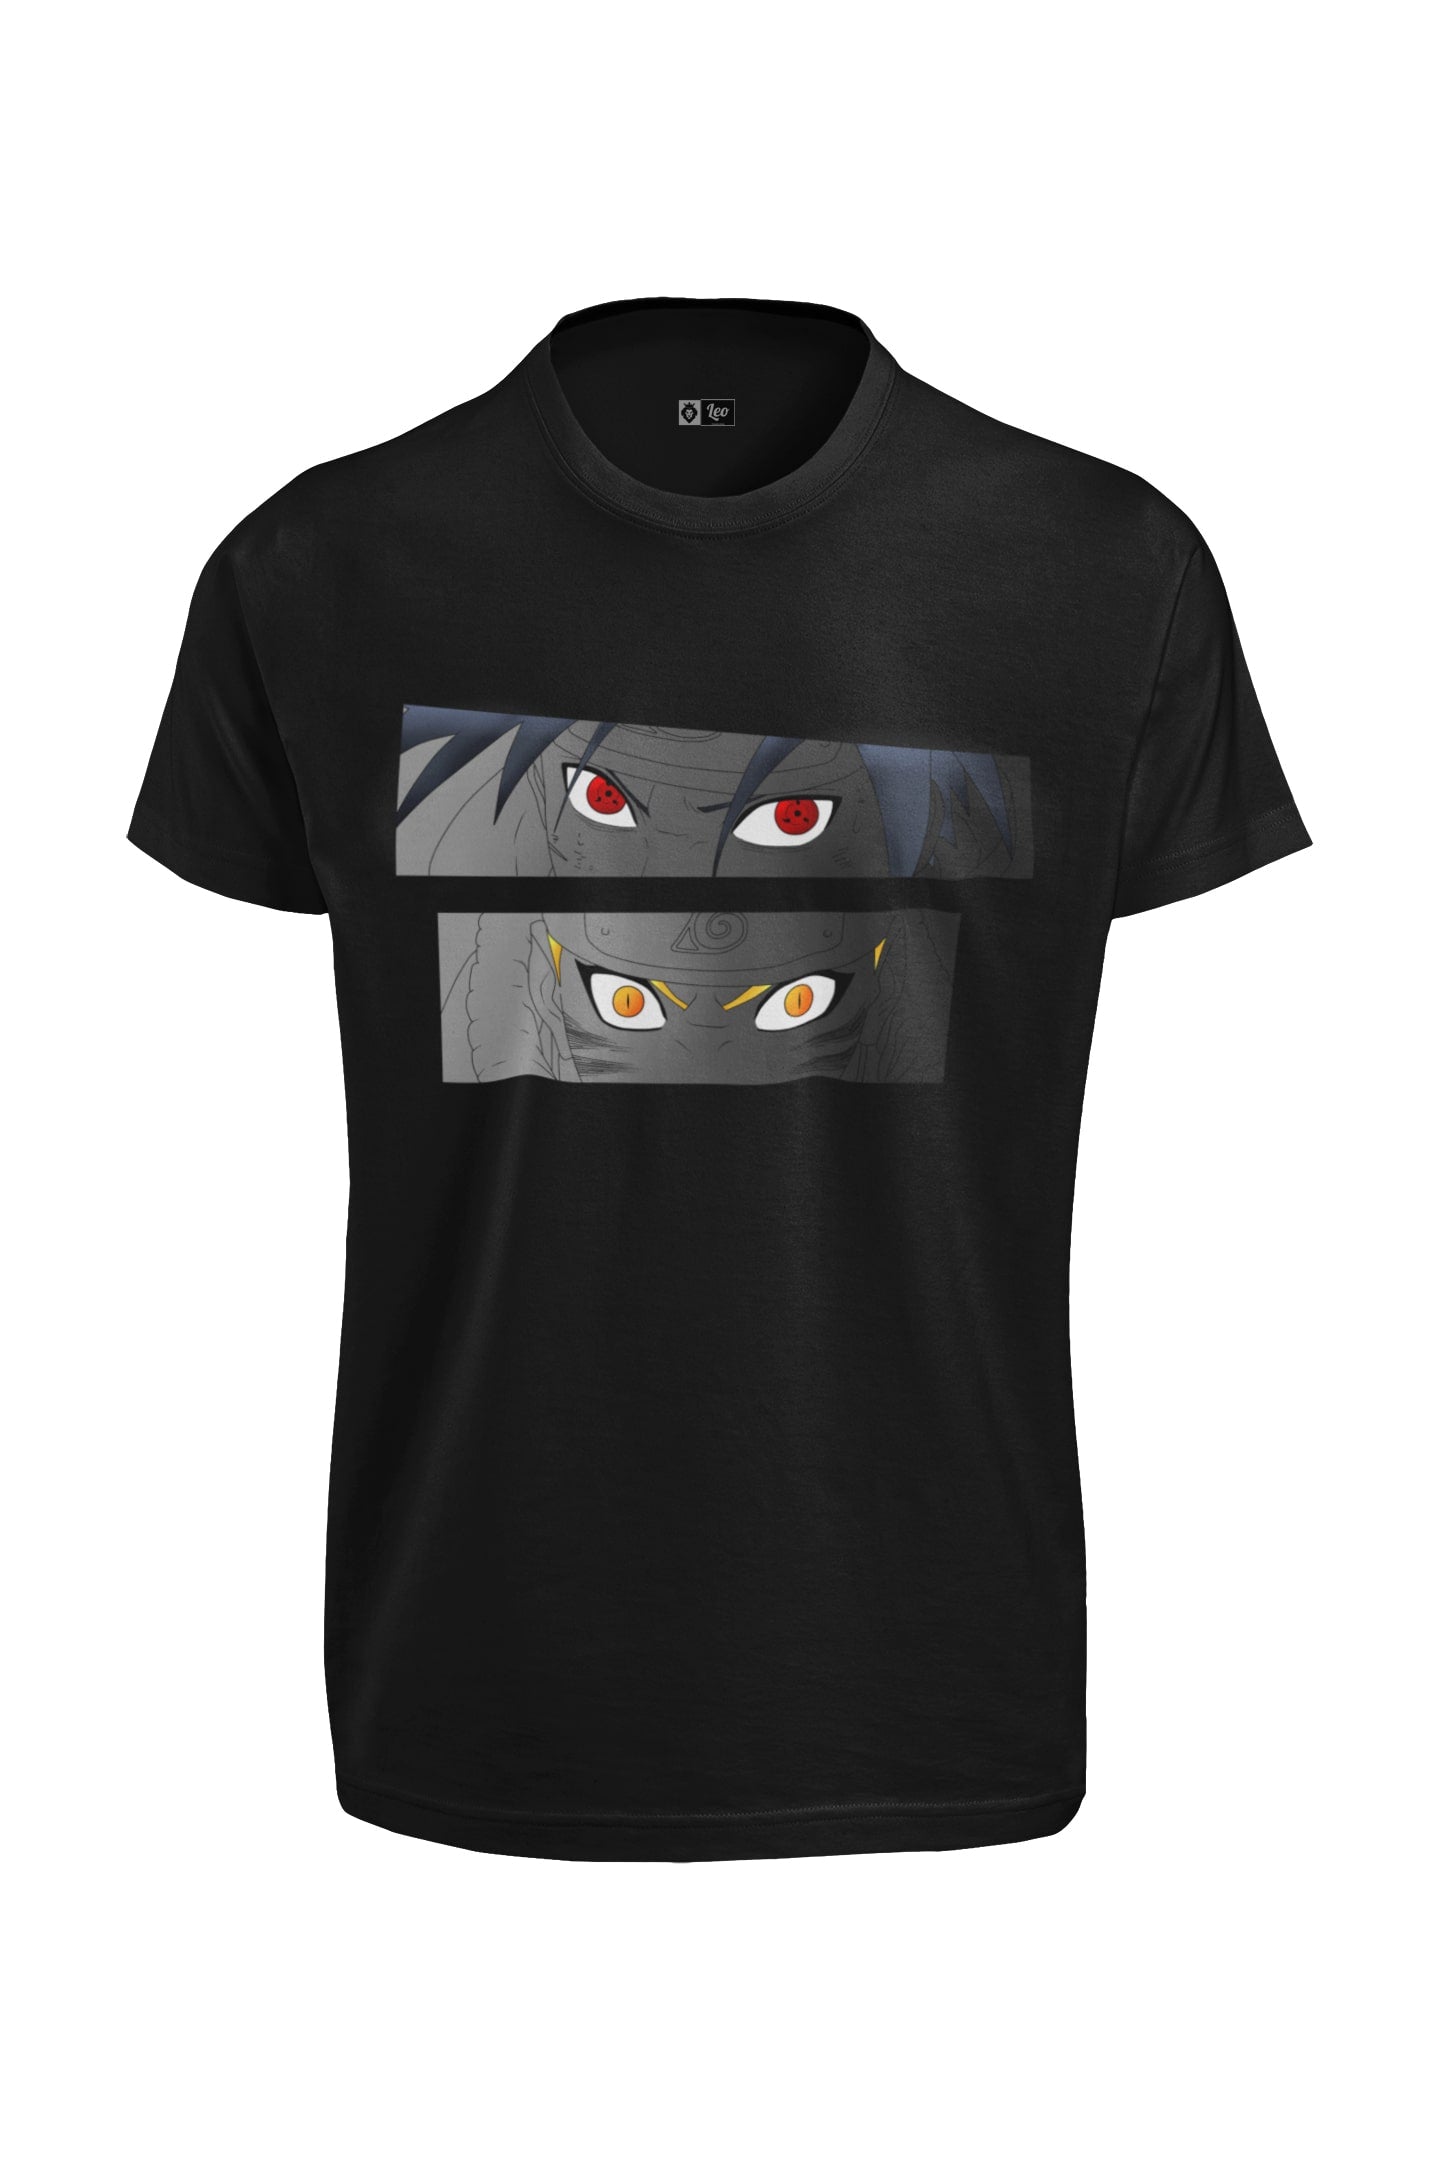 Buy Sasuke Uchiha and Naruto Uzumaki T-Shirt Online